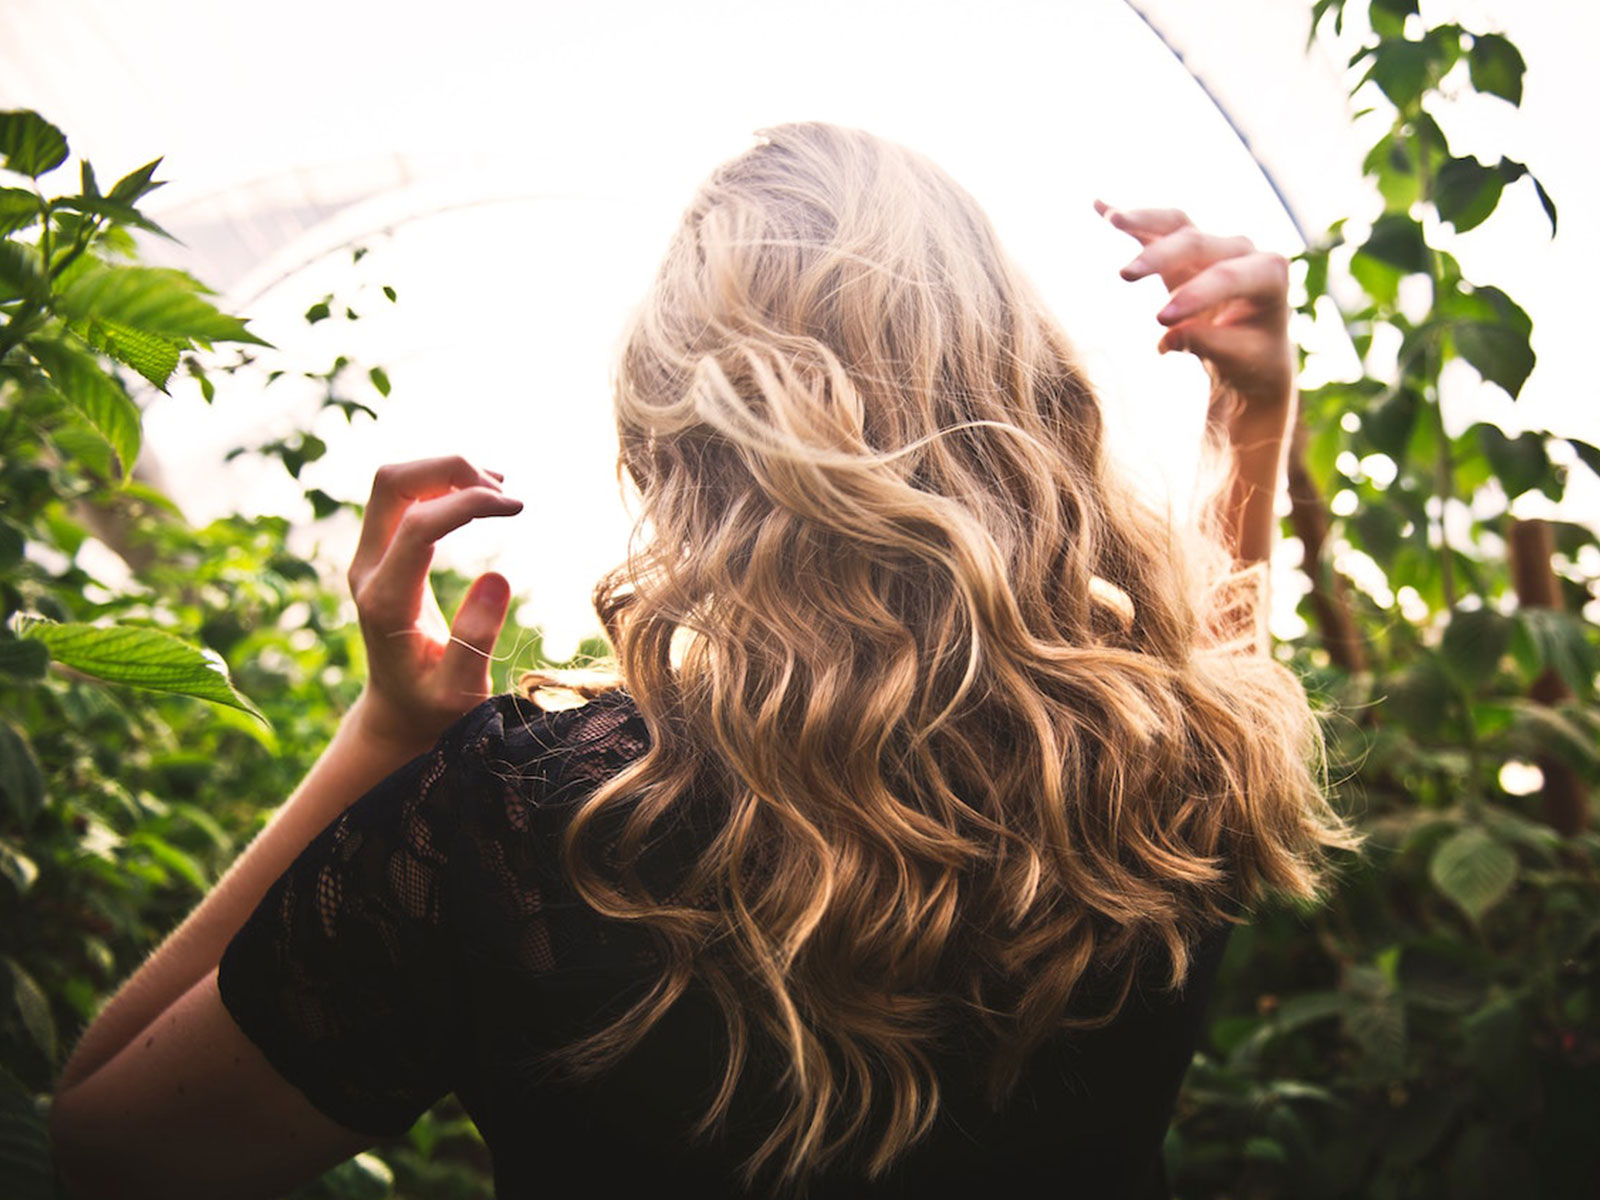 infoblog dresscloud Pielęgnacja włosów kosmetykami bez SLS – dlaczego warto się na nią zdecydować?